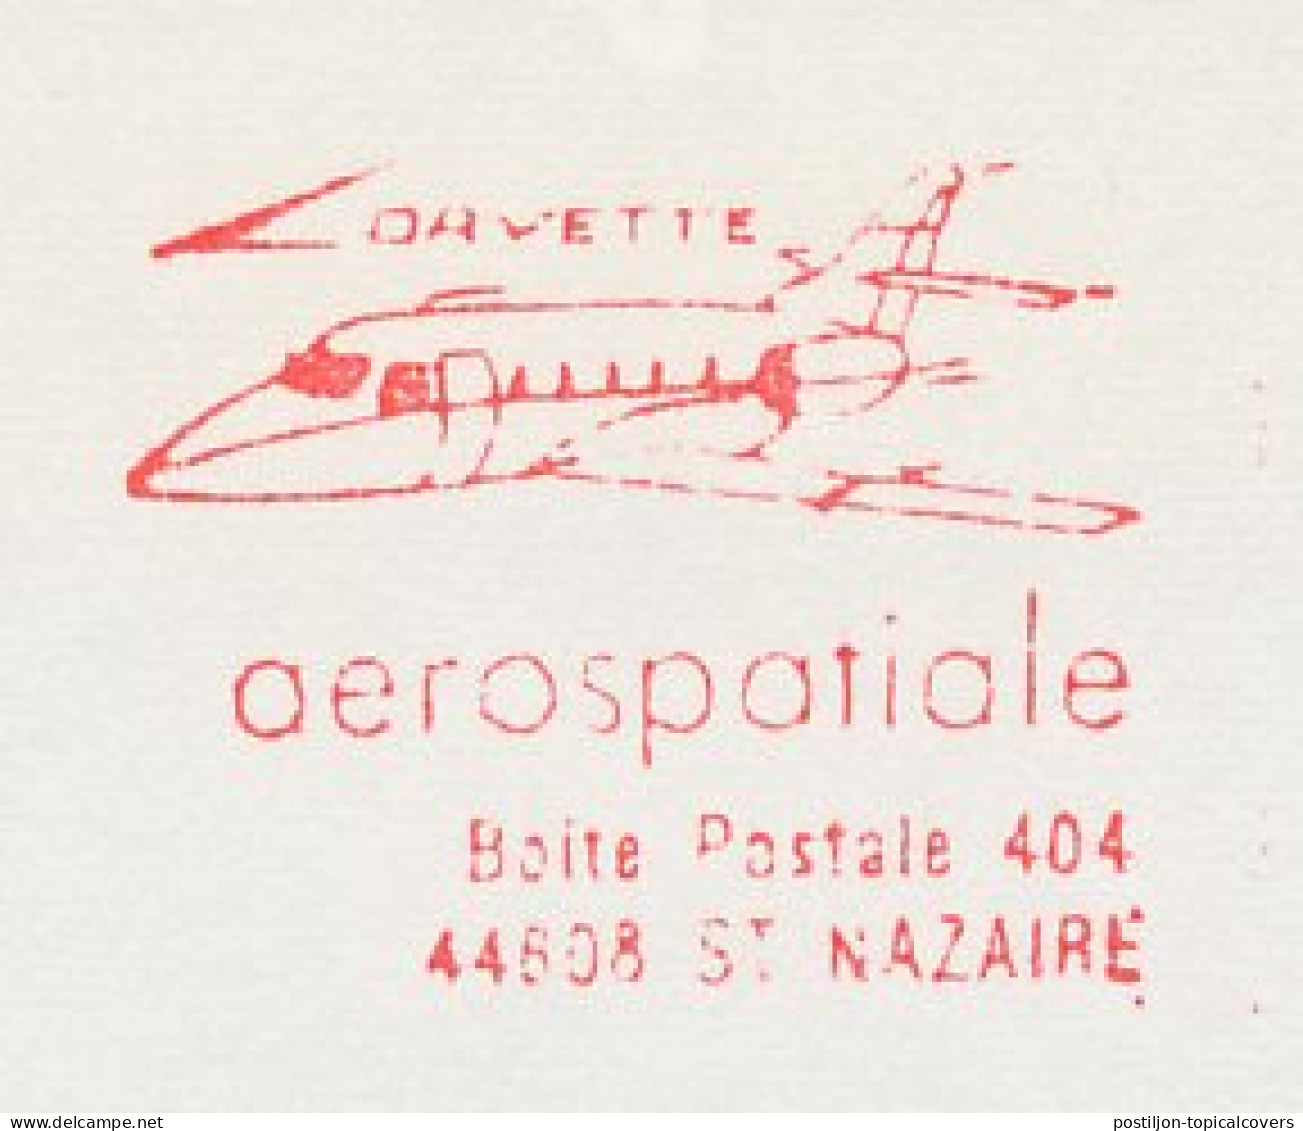 Meter Cut France 1984 Airplane - Aerospitale - Davette - Vliegtuigen